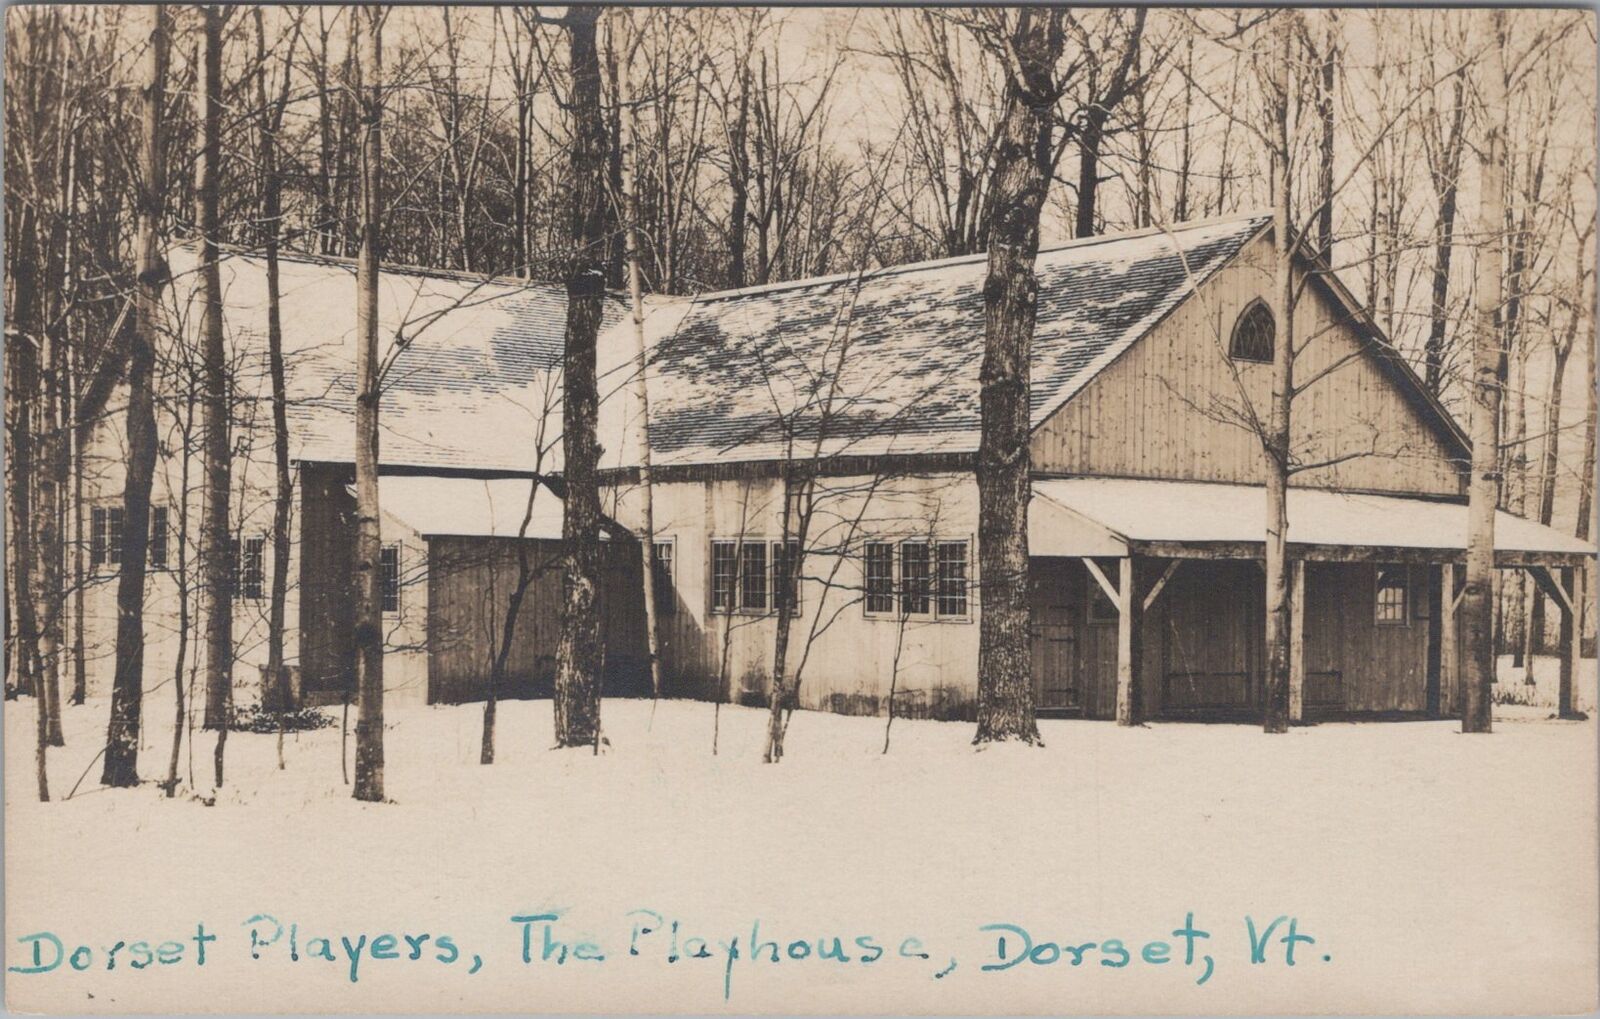 Dorset Players Playhouse, Dorset, Vermont Snow Scene RPPC Photo 1950 Postcard